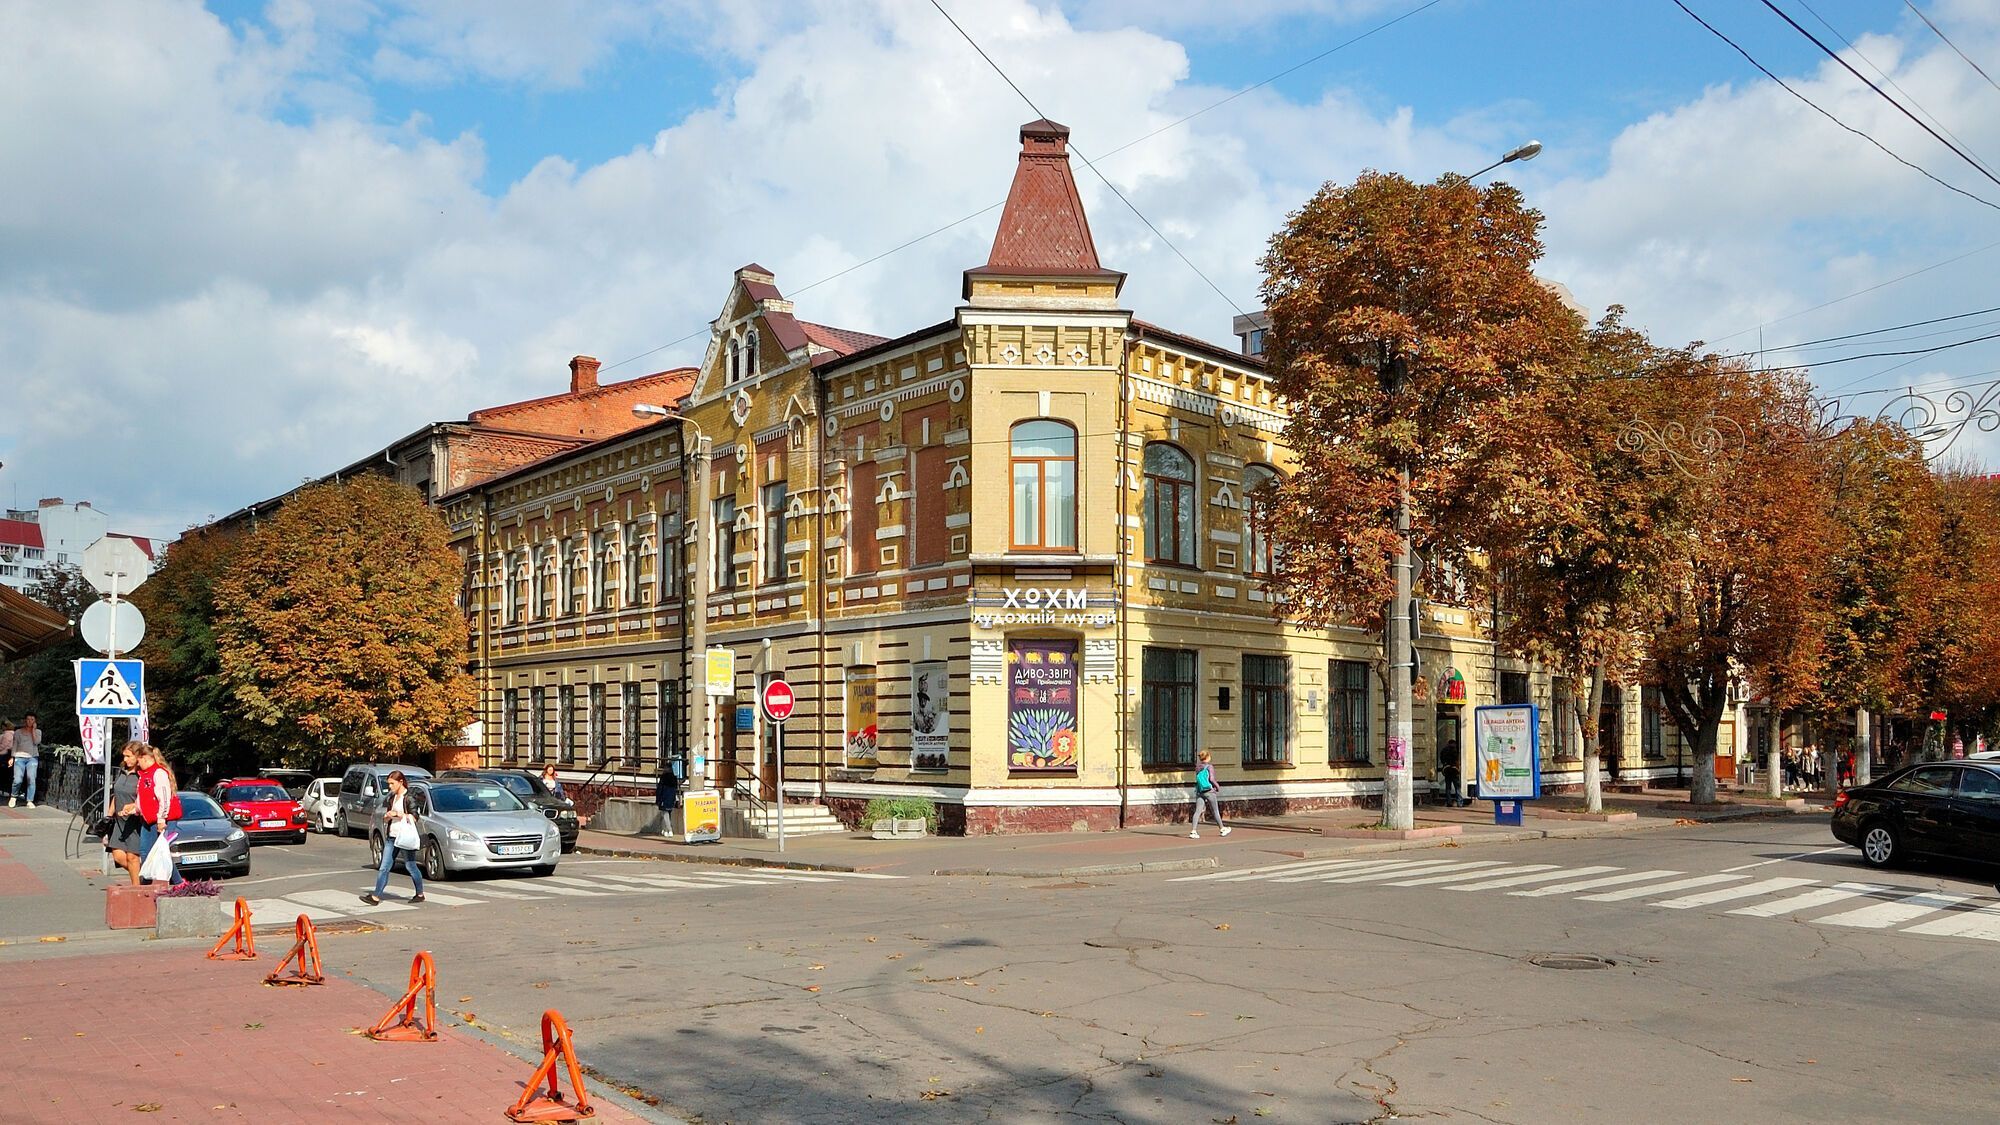 Какой украинский город изображен на фото: проверьте свои знания